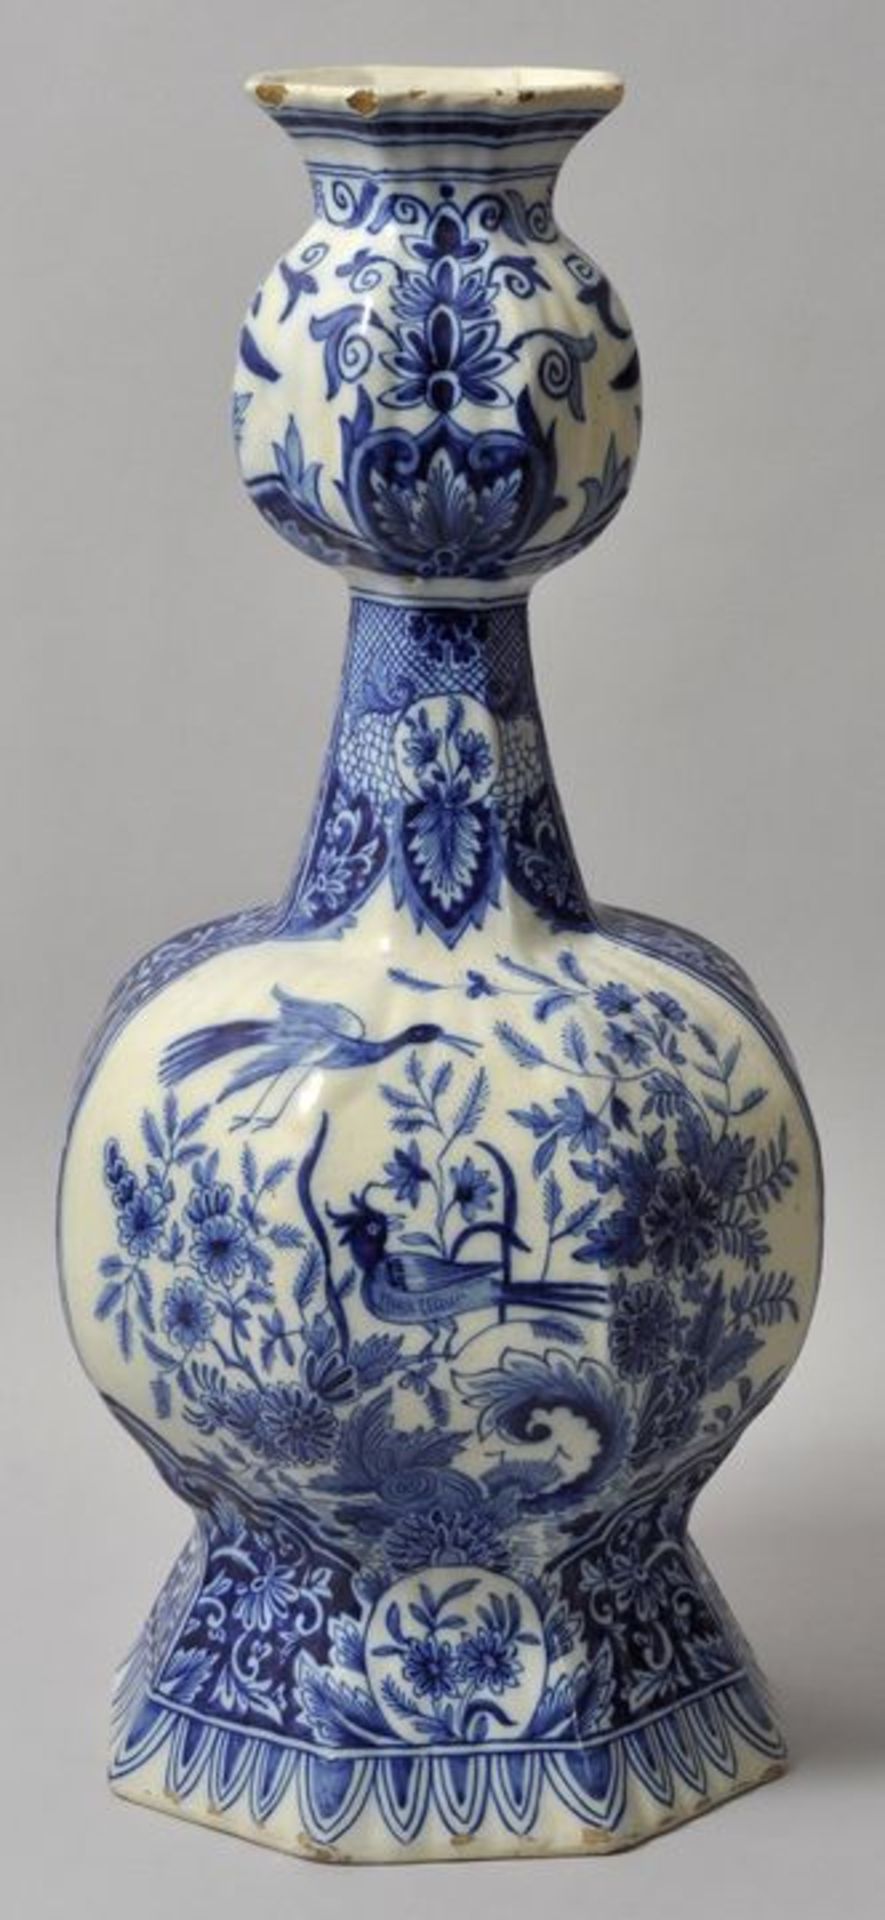 Vase, sog. Knubbelflasche, Delft, um 1700Fayence, in Blaumalerei auf weißer Glasur dekoriert.